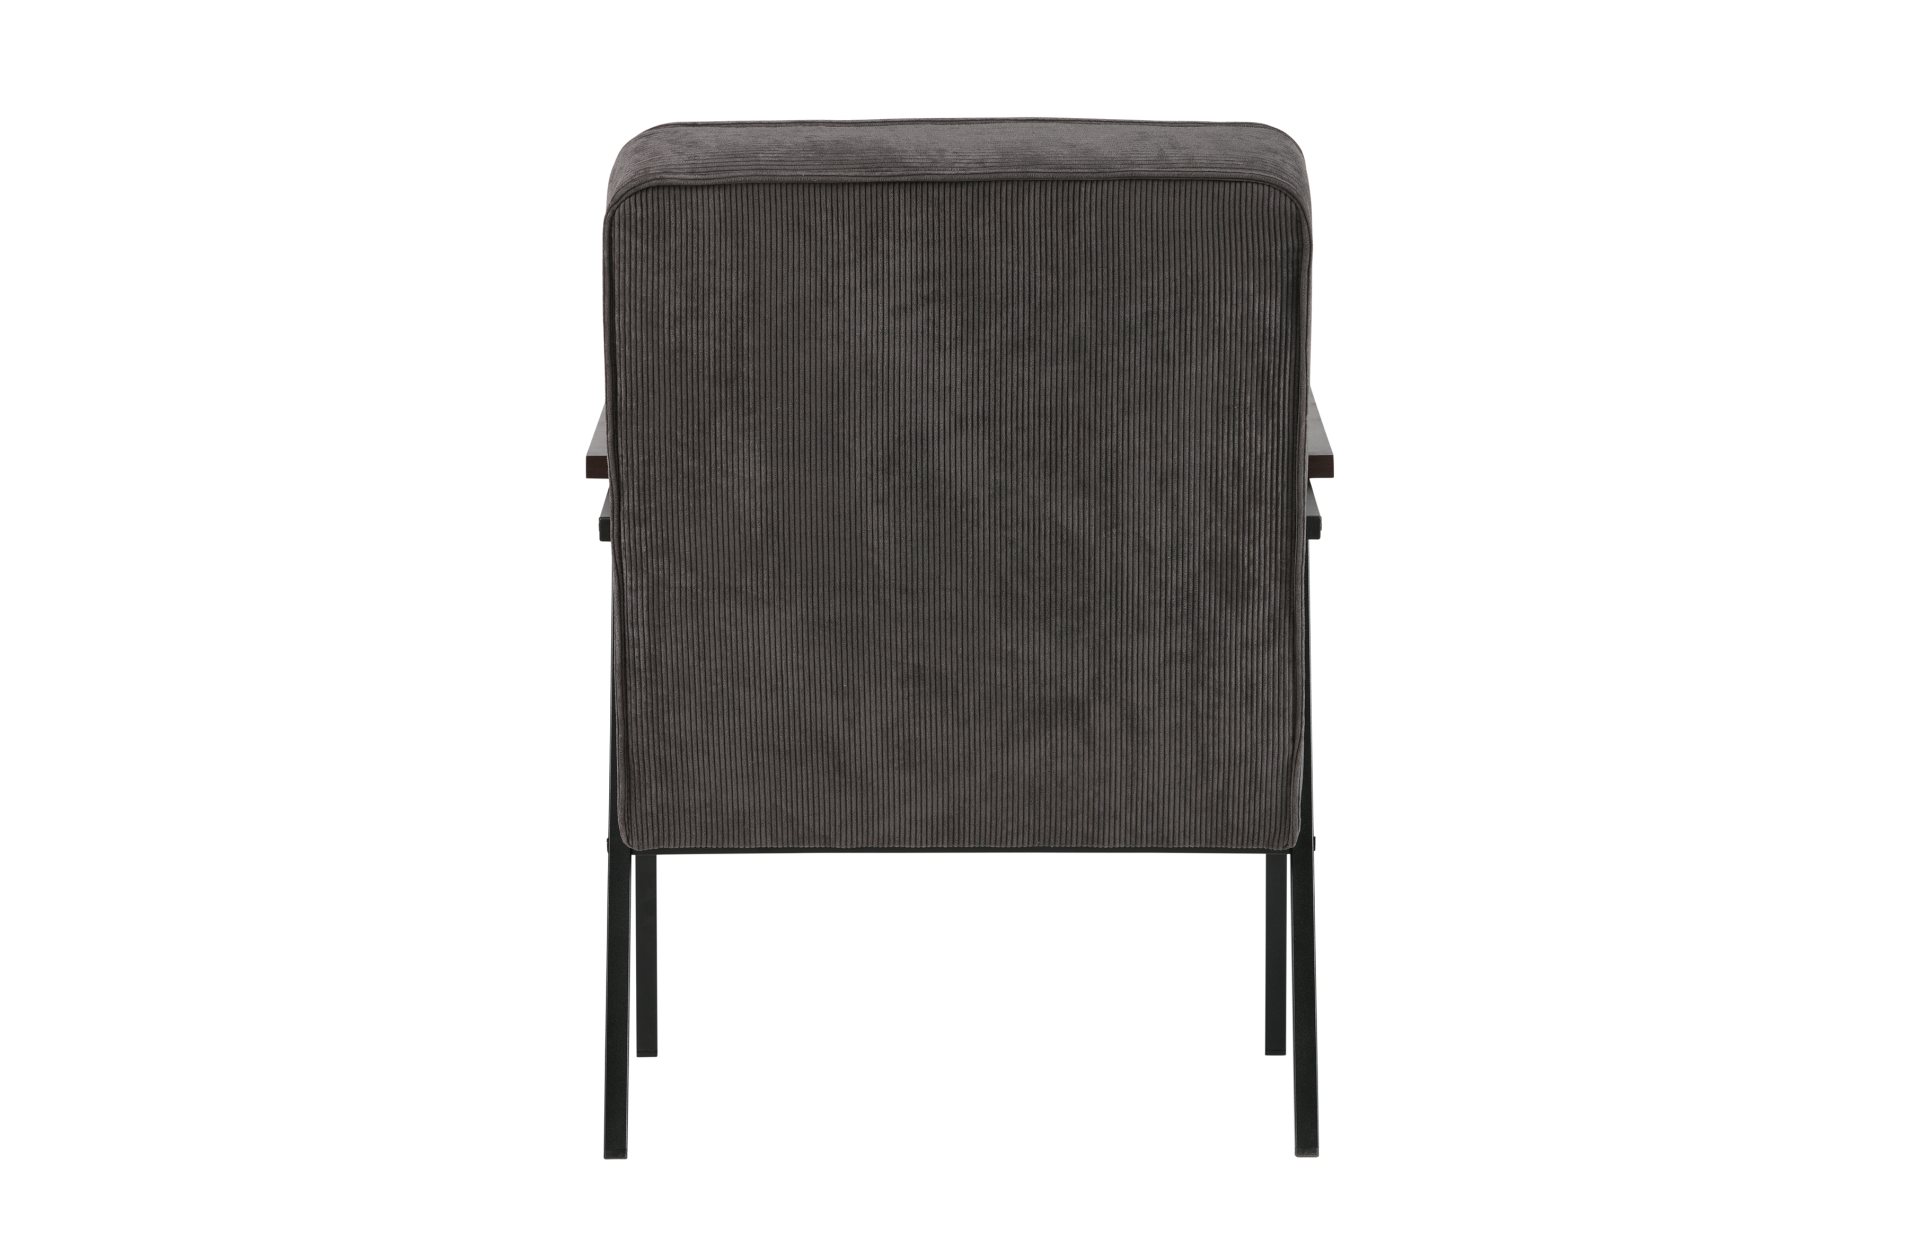 Der Stilvolle Sessel Sally überzeugt mit seinem skandinavisch aber auch modernen Design. Gefertigt wurde der Sessel aus Metall und hat einen Stoffbezug in Cord-Optik. Die zwei Armlehnen sorgen für einen bequemes Sitzen. Der Sessel hat die Farbe Anthrazit.